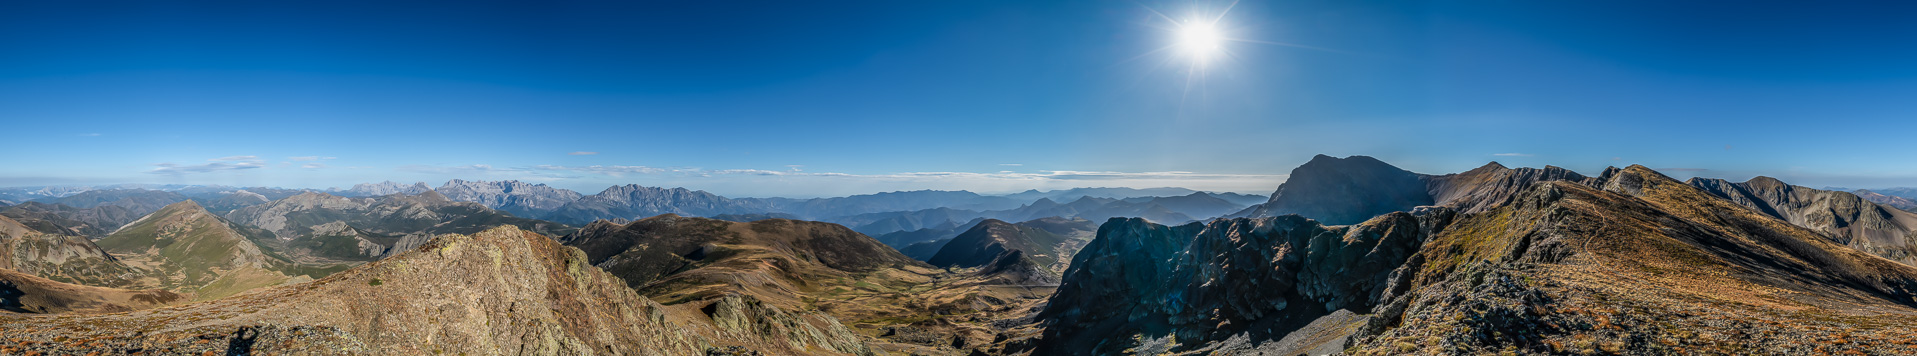 Obschon es nur eine kleine Graterhebung ist, gefällt der Blick zu den Picos de Europa außerordentlich!